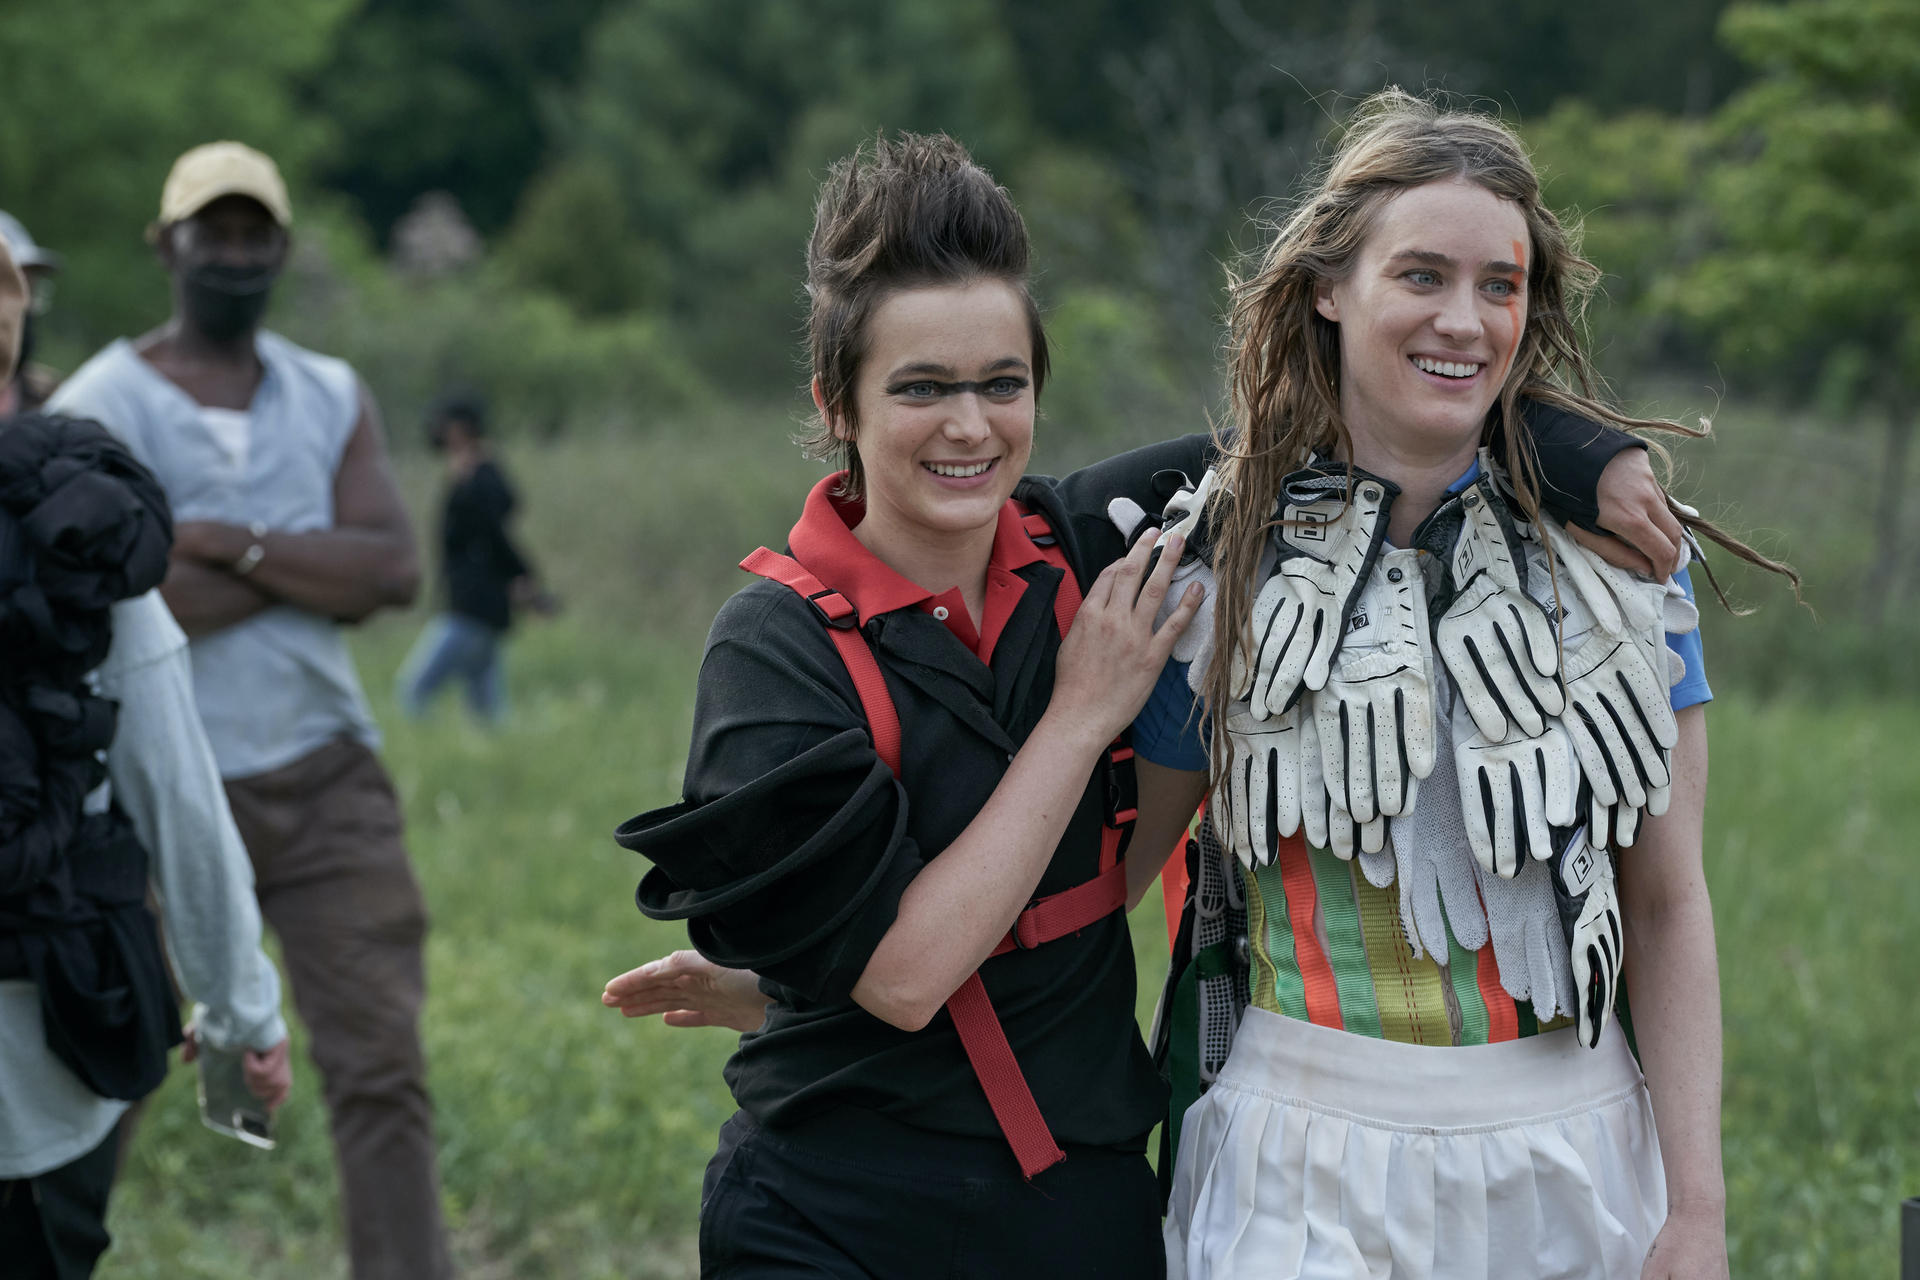 Two girls, strangely dressed, walking in a field